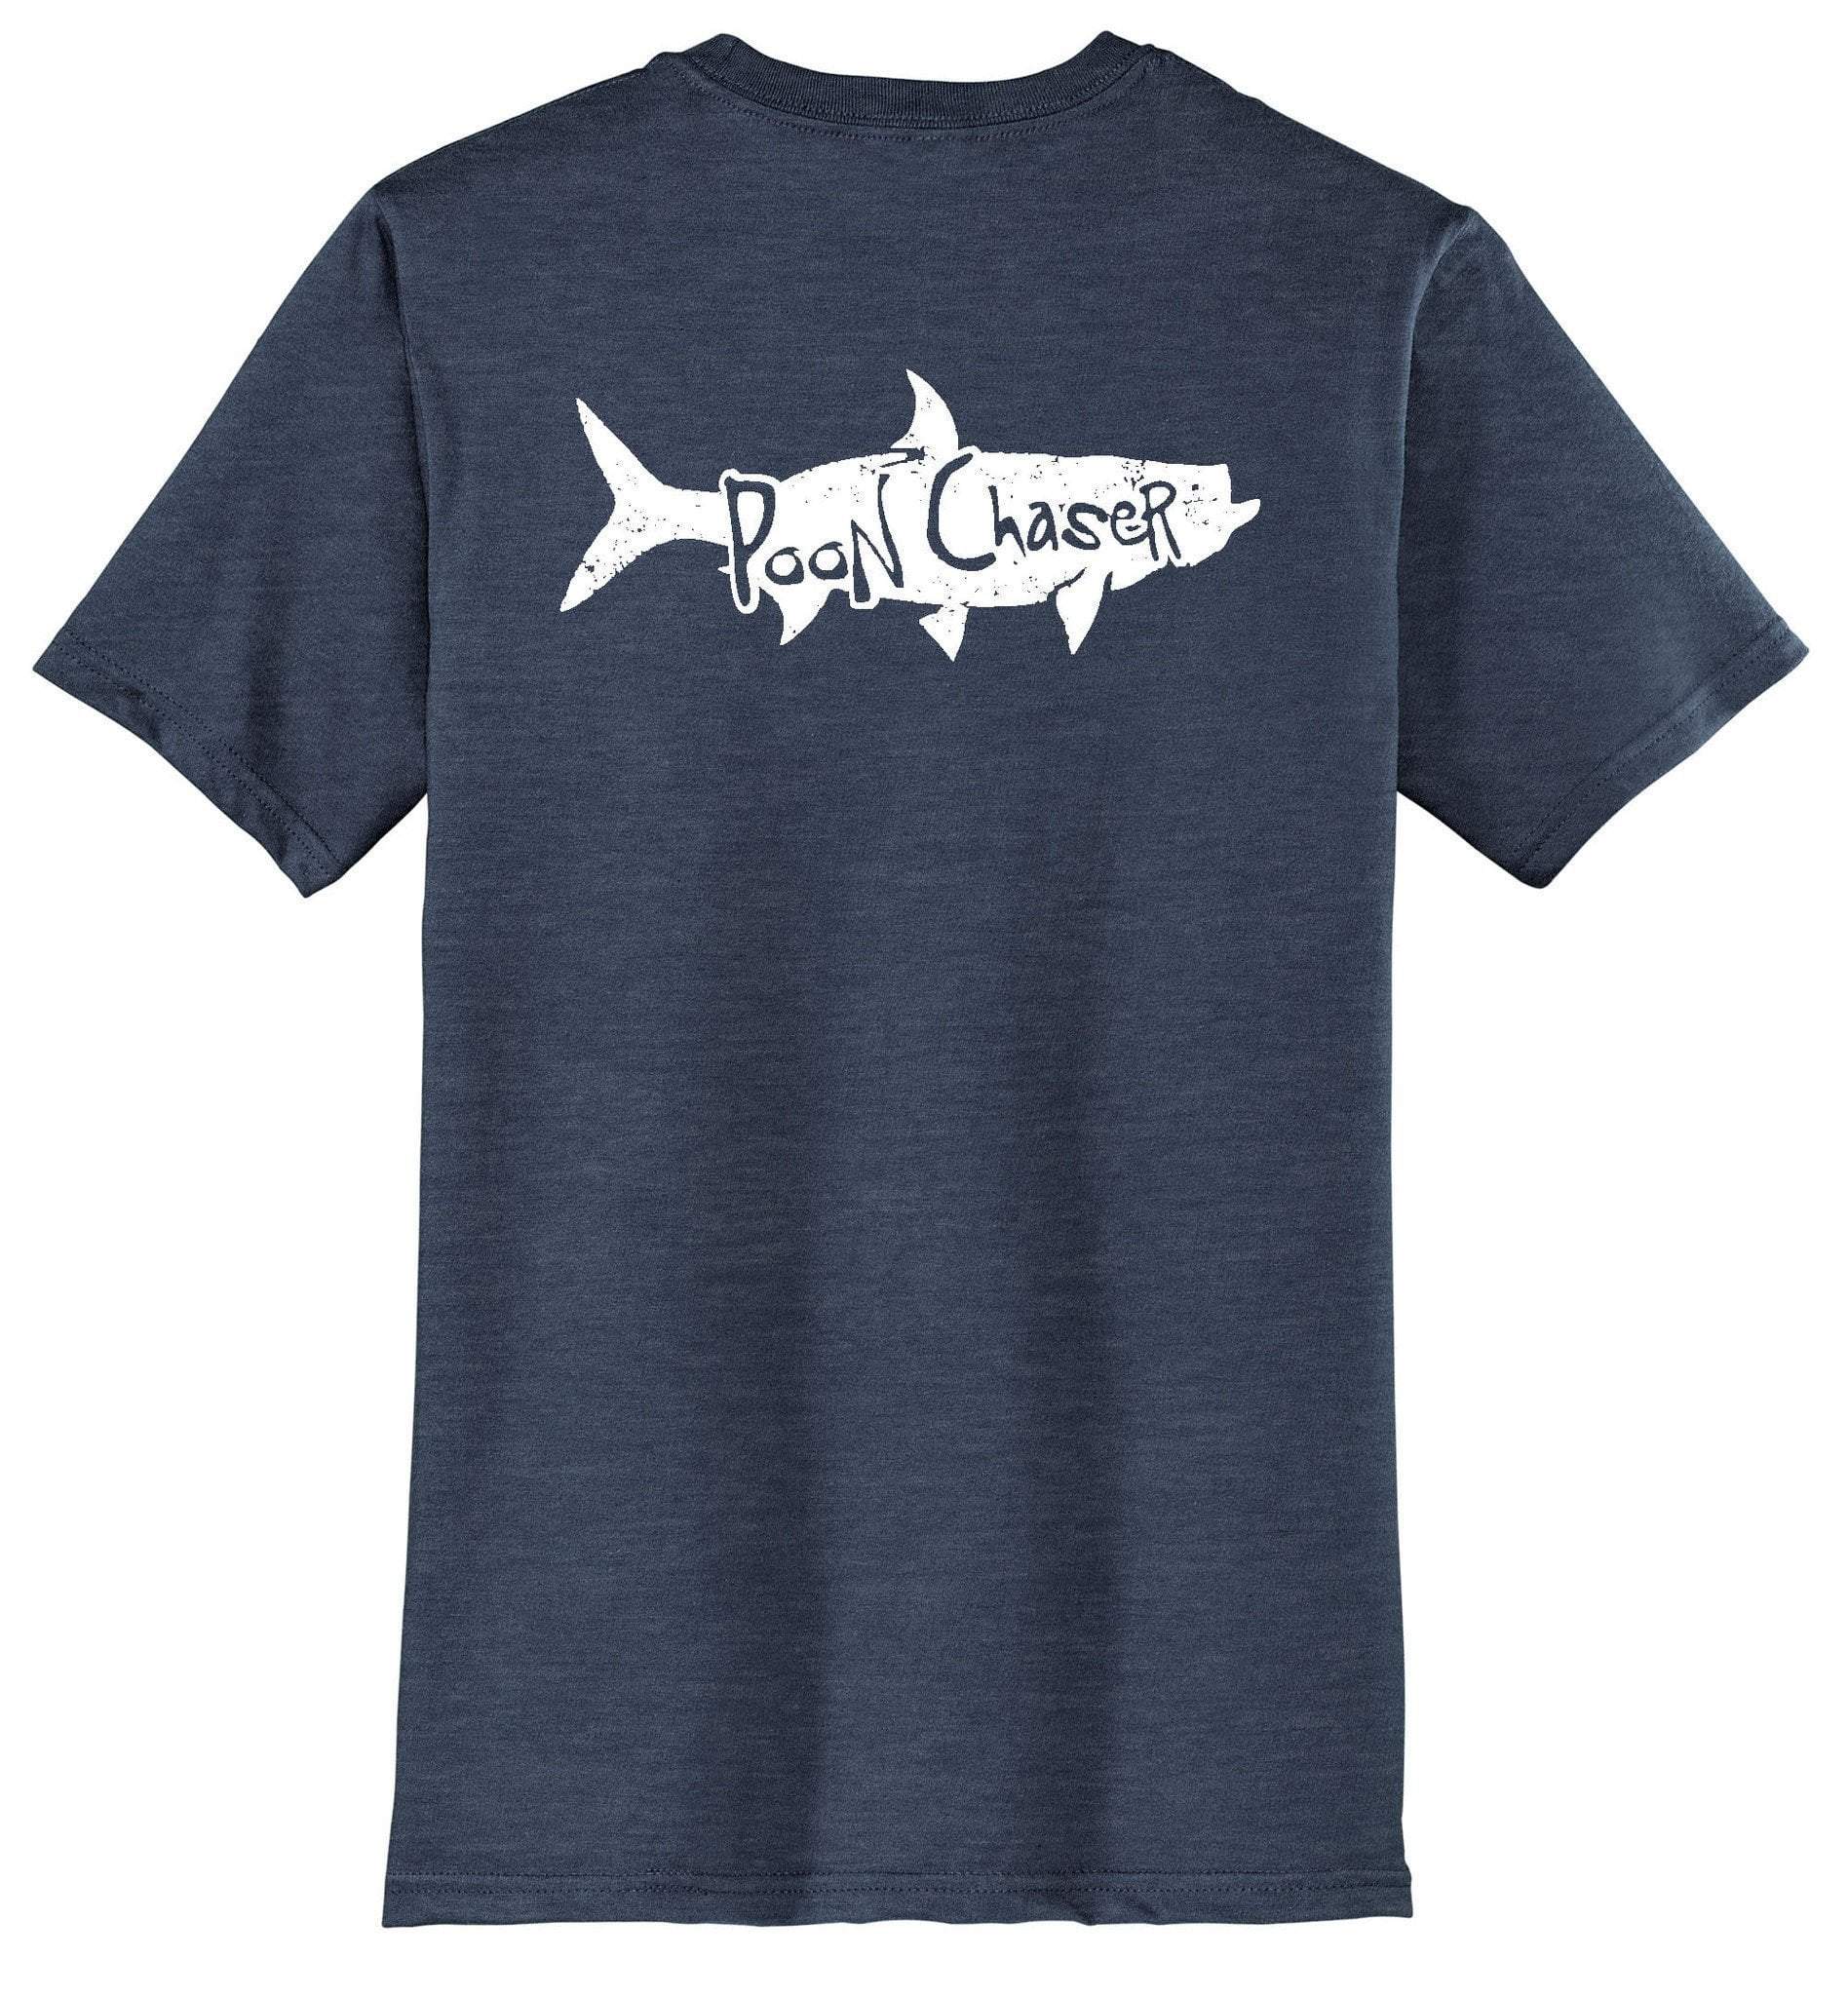 Tarpon Logo - Details about Tarpon Fishing Shirt with 